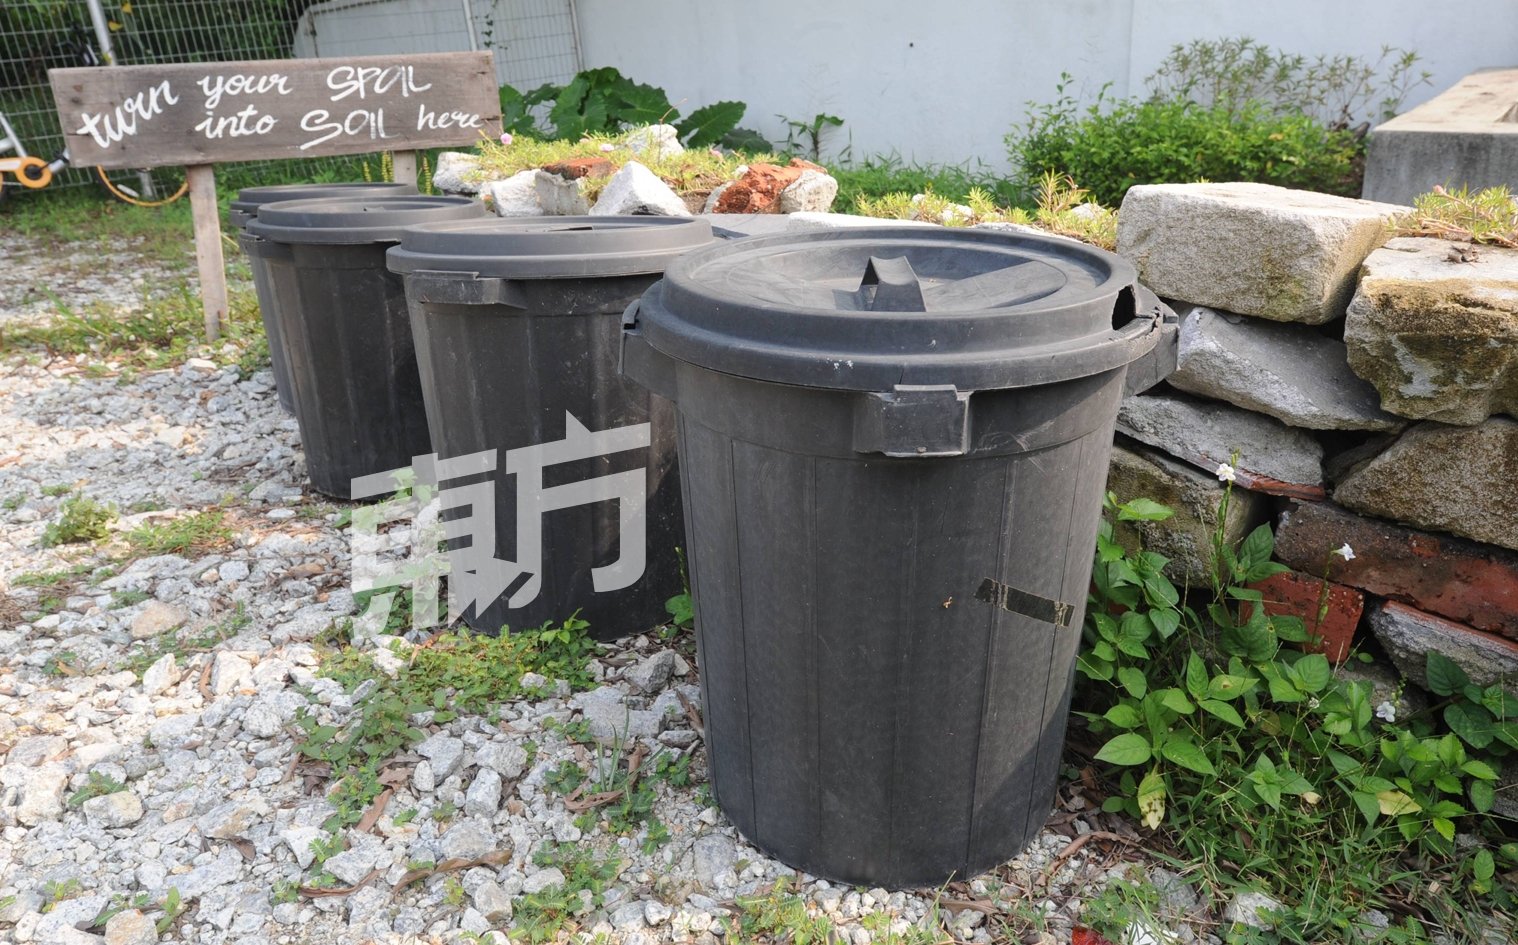 菜园入口处放置了几个黑色大垃圾桶，鼓励附近居民把厨余带过来做堆肥之用。